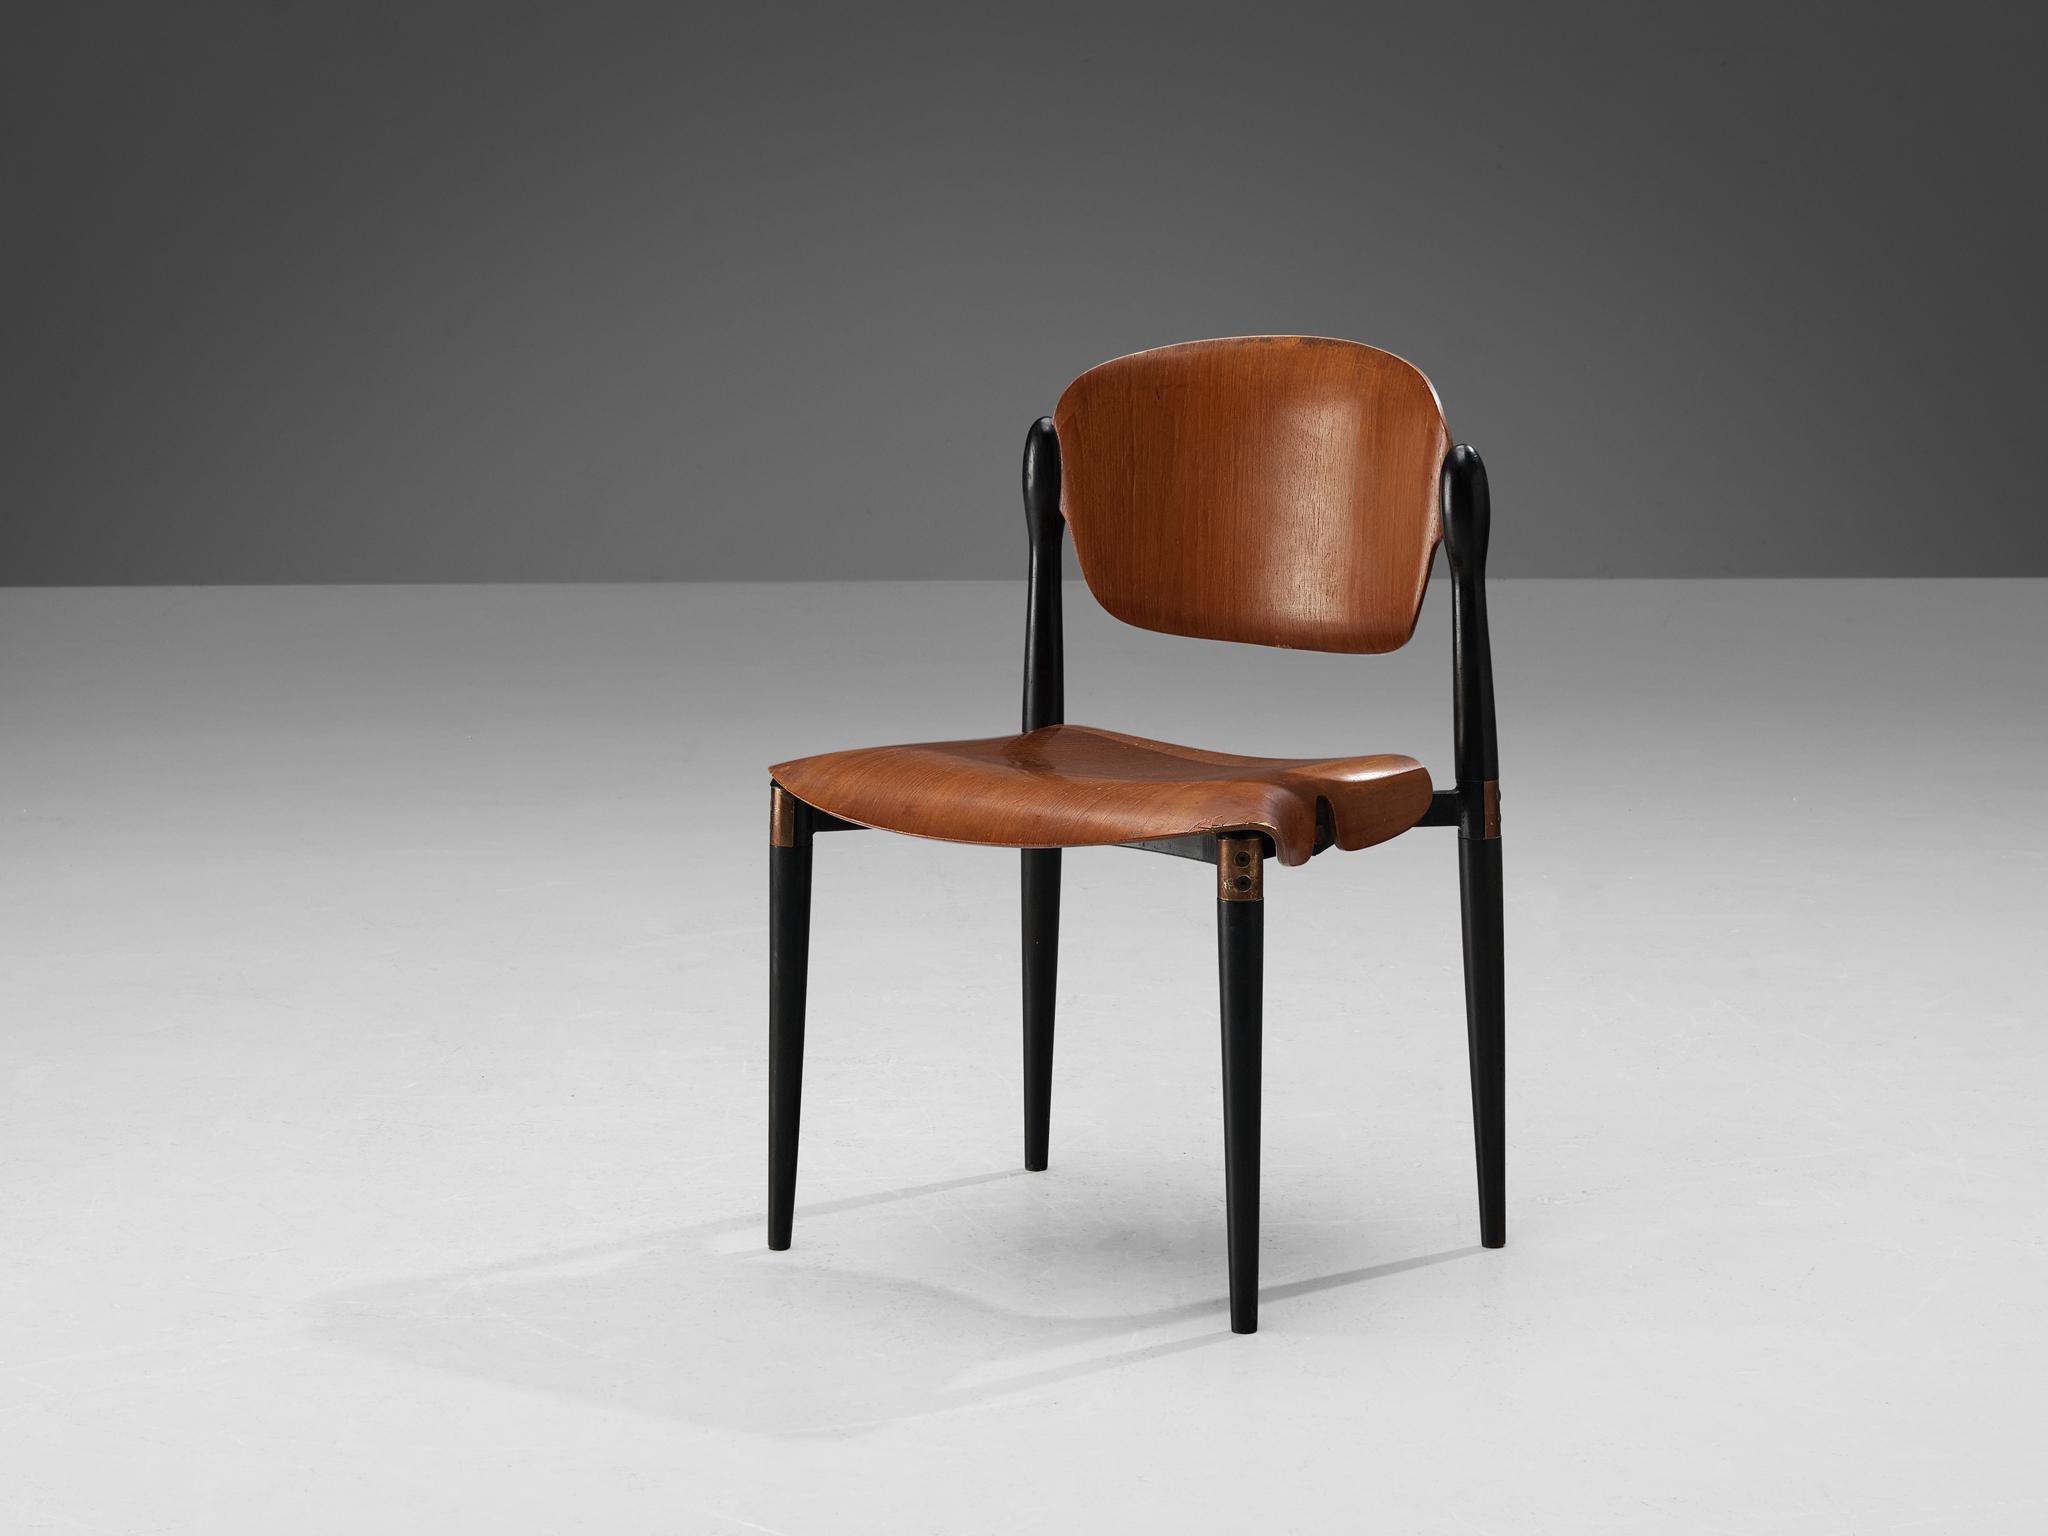 Eugenio Gerli pour Tecno, chaise de salle à manger, modèle S83, contreplaqué de teck moulé, Italie, conception et réalisation 1962

Une chaise délicate modèle S83 conçue et produite par Eugenio Gerli pour Tecno en 1962. Le dossier et l'assise sont